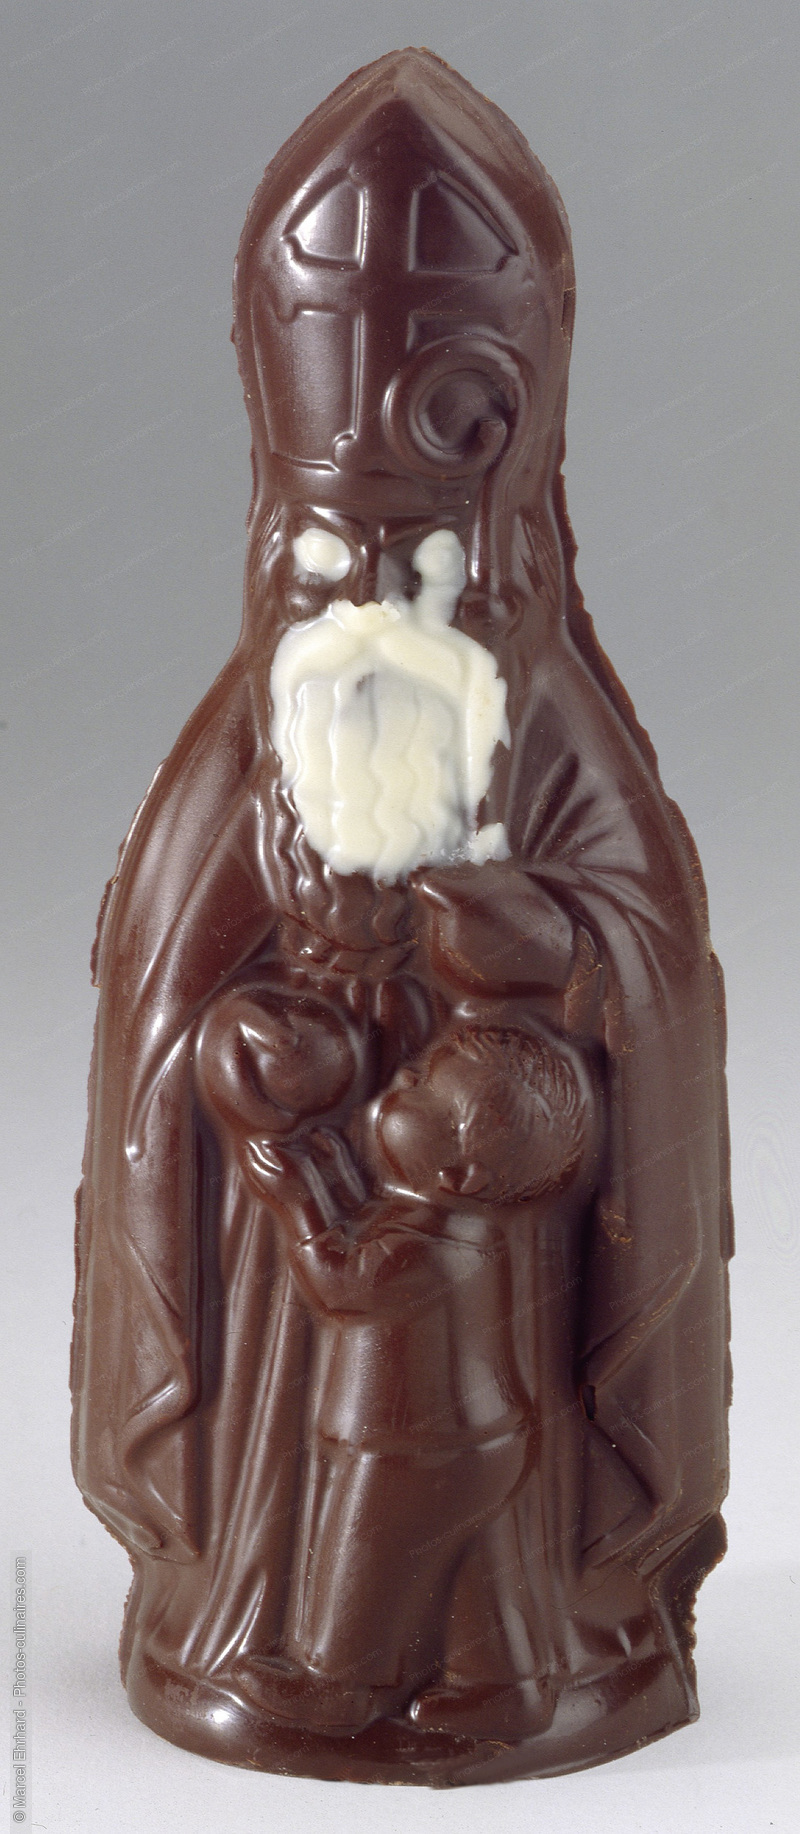 Saint Nicolas en chocolat - photo référence DE280.jpg